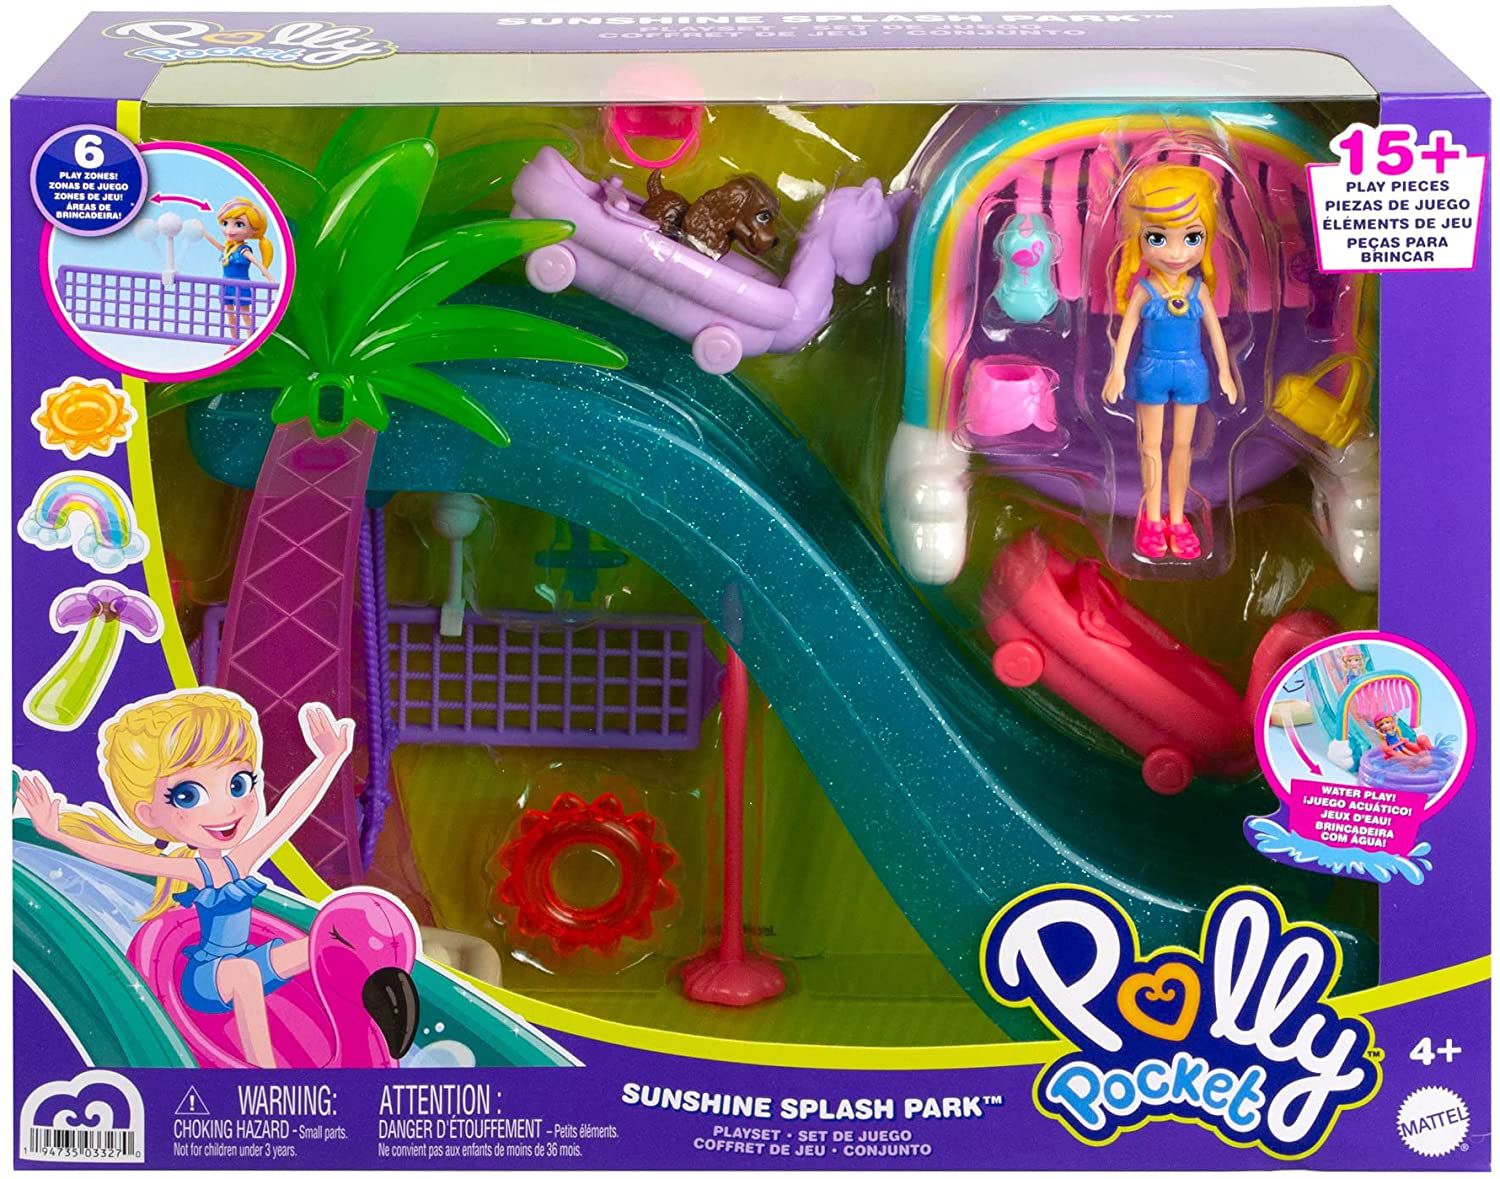 Polly Pocket Parque Aquaticos de Esportes-Mattel-HDW63 - Star Brink  Brinquedos